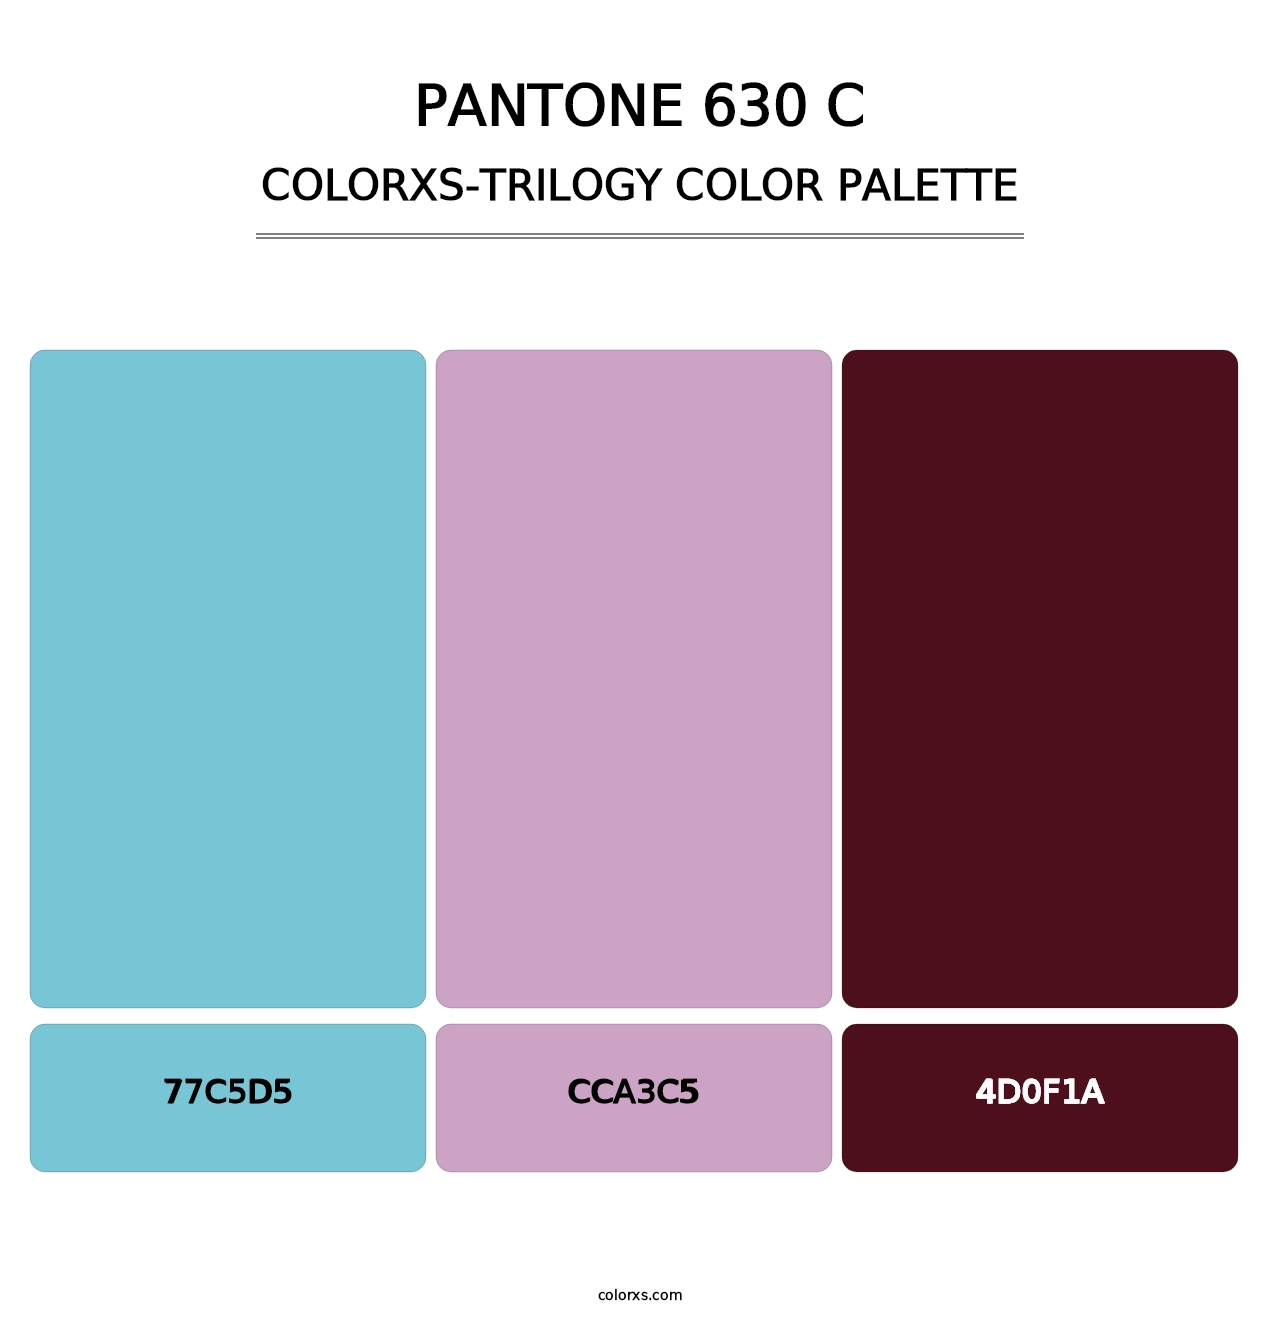 PANTONE 630 C - Colorxs Trilogy Palette